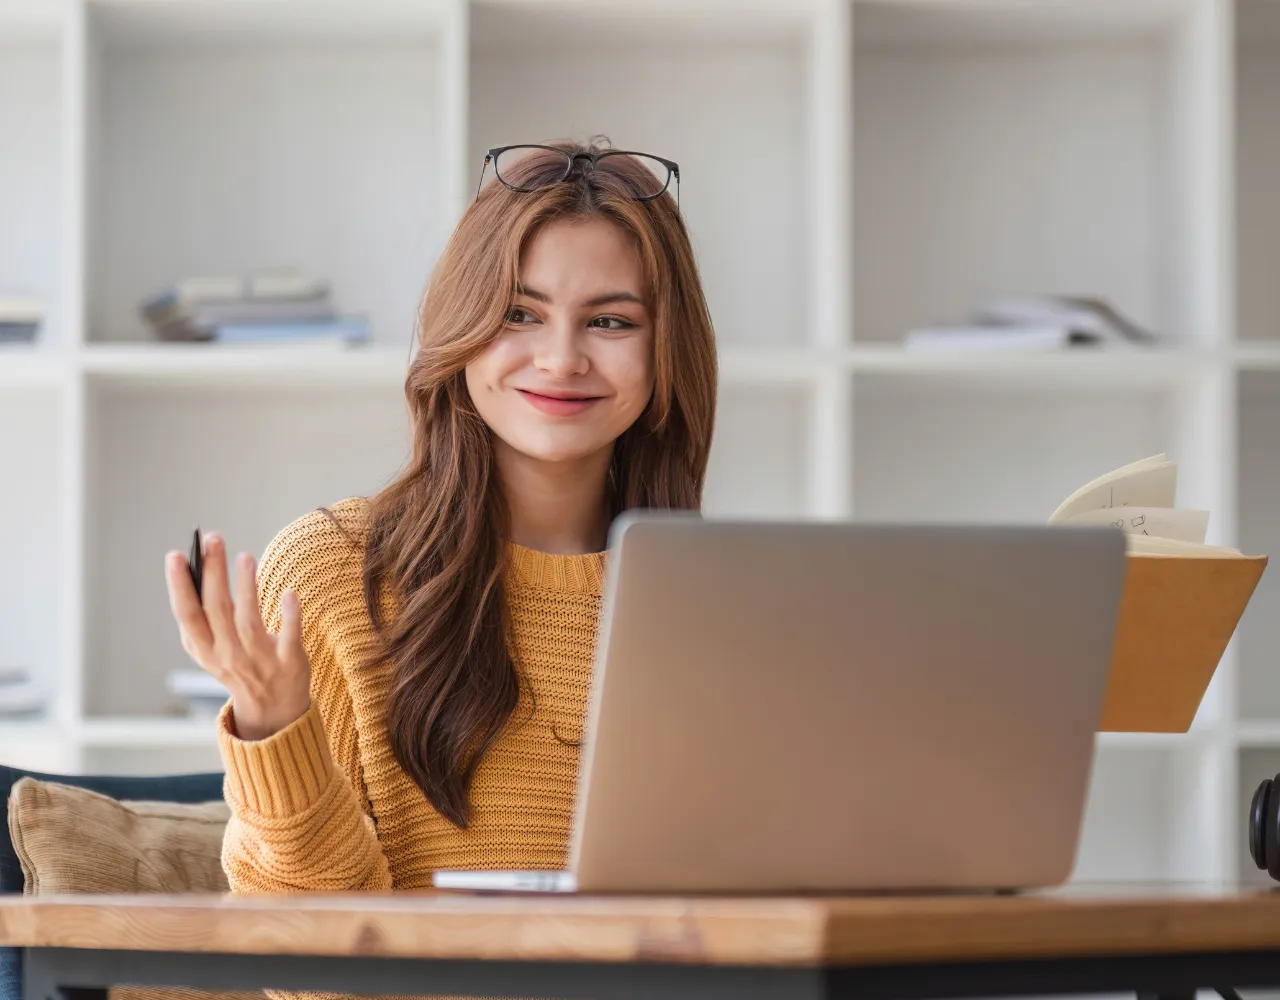 Uma mulher com um suéter amarelo sorri e gesticula enquanto olha para seu laptop em uma sala com prateleiras brancas.